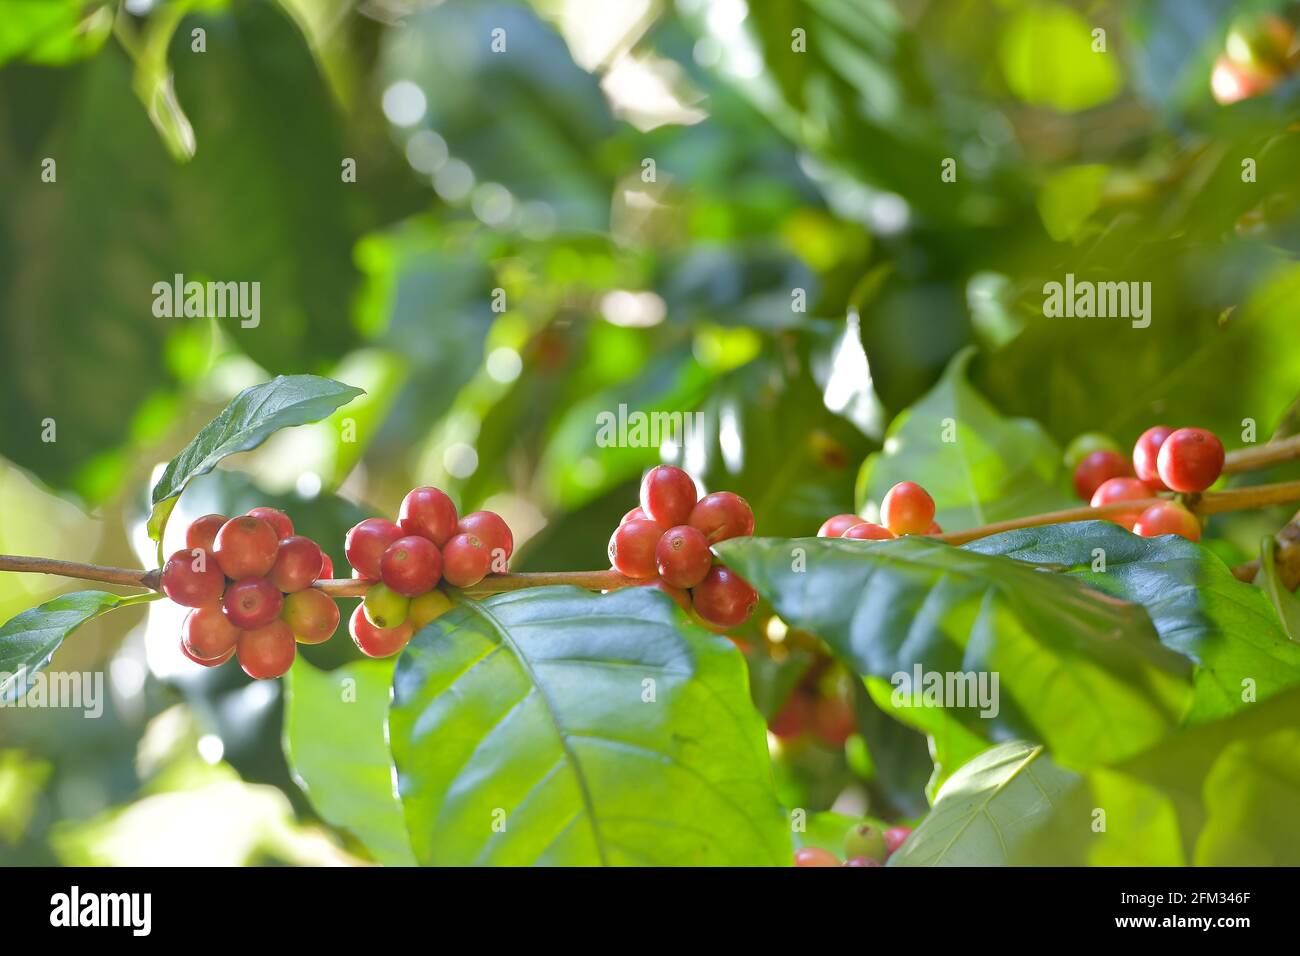 Gros plan de baies de café Arabica fraîches qui poussent sur un arbre, en Thaïlande Banque D'Images